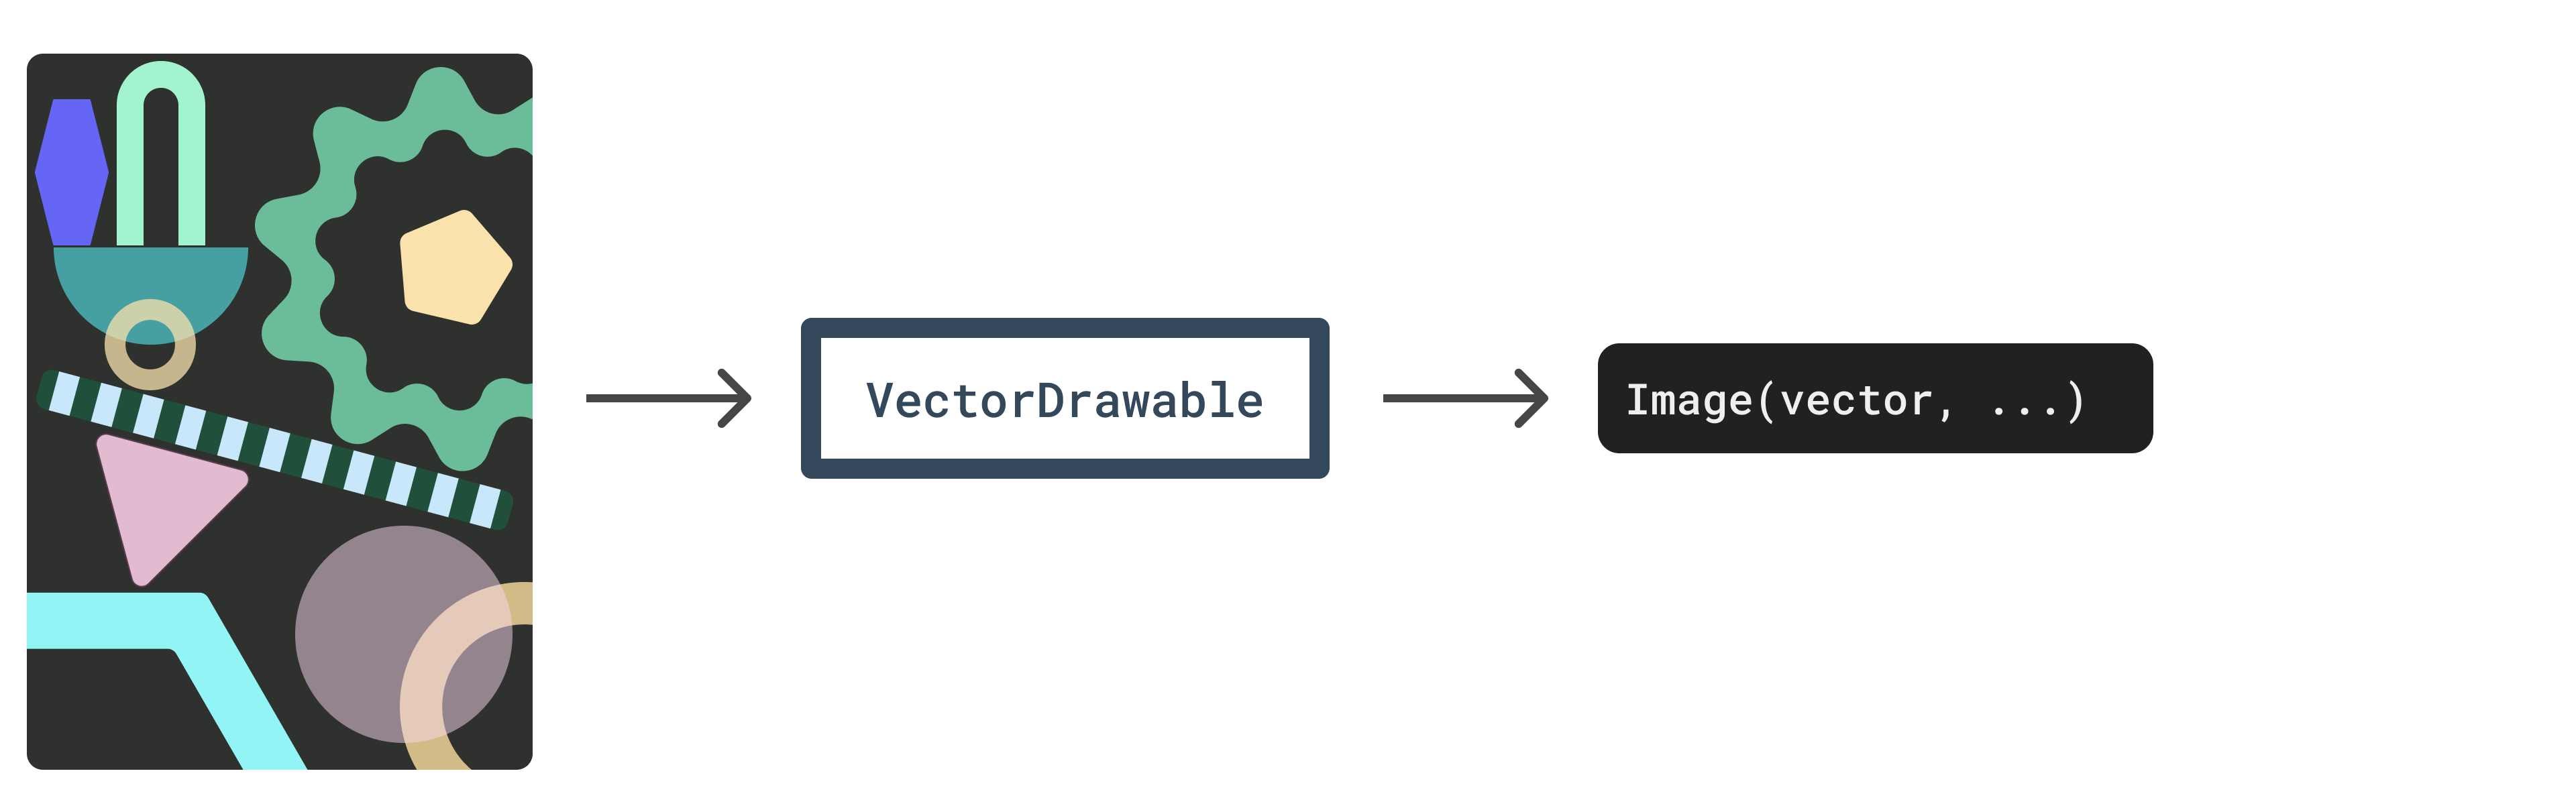 مخطط - طبقات المتجه إلى VectorDrawable إلى صورة